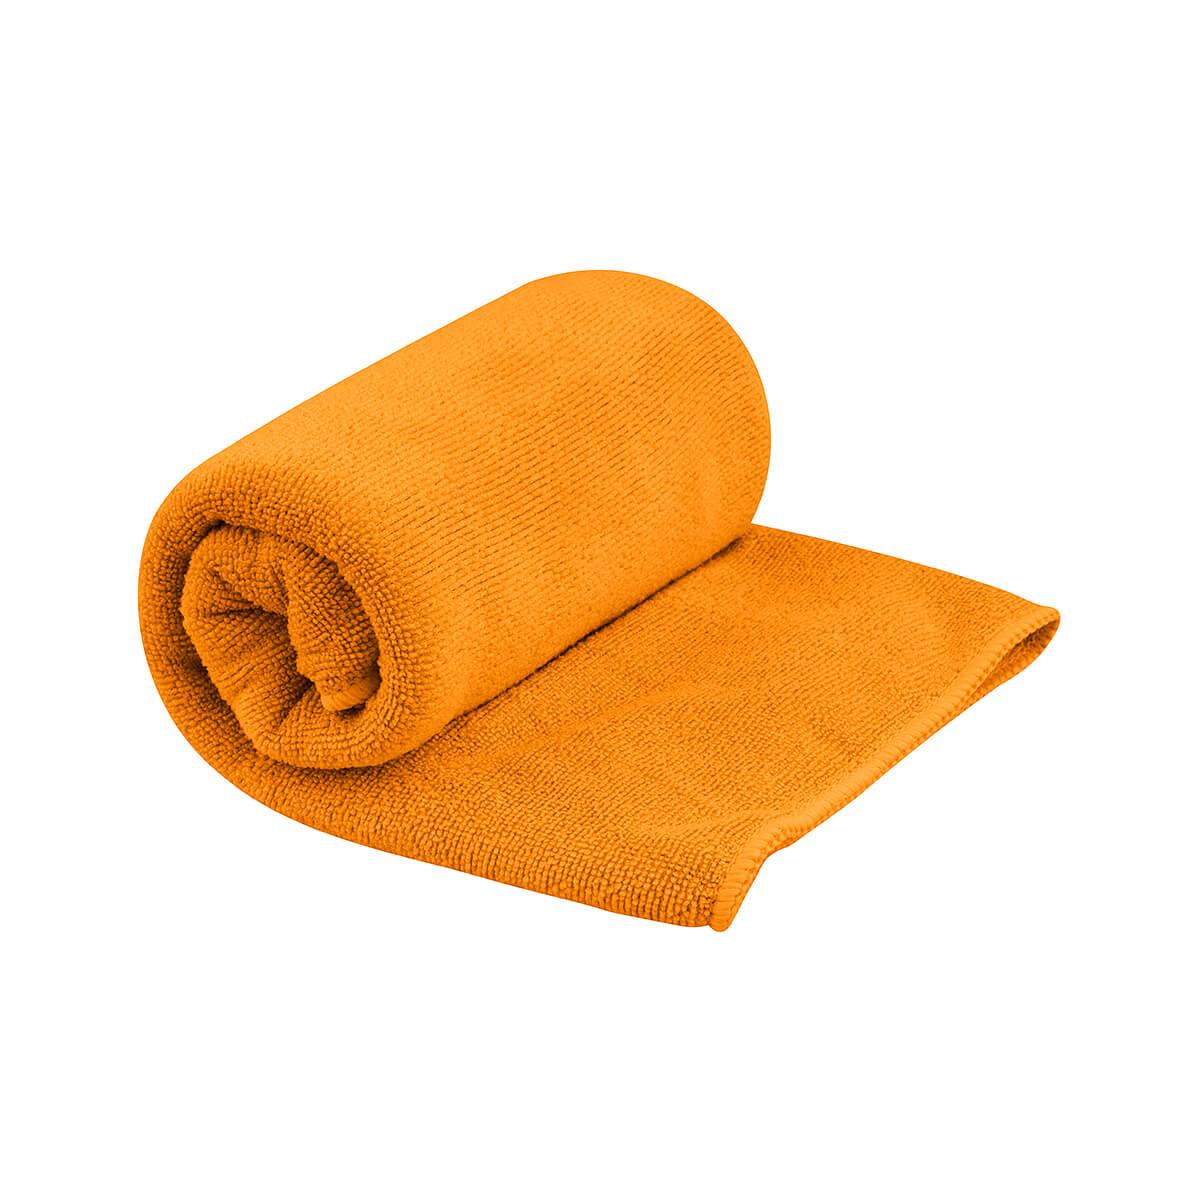  Tek Towel - Small